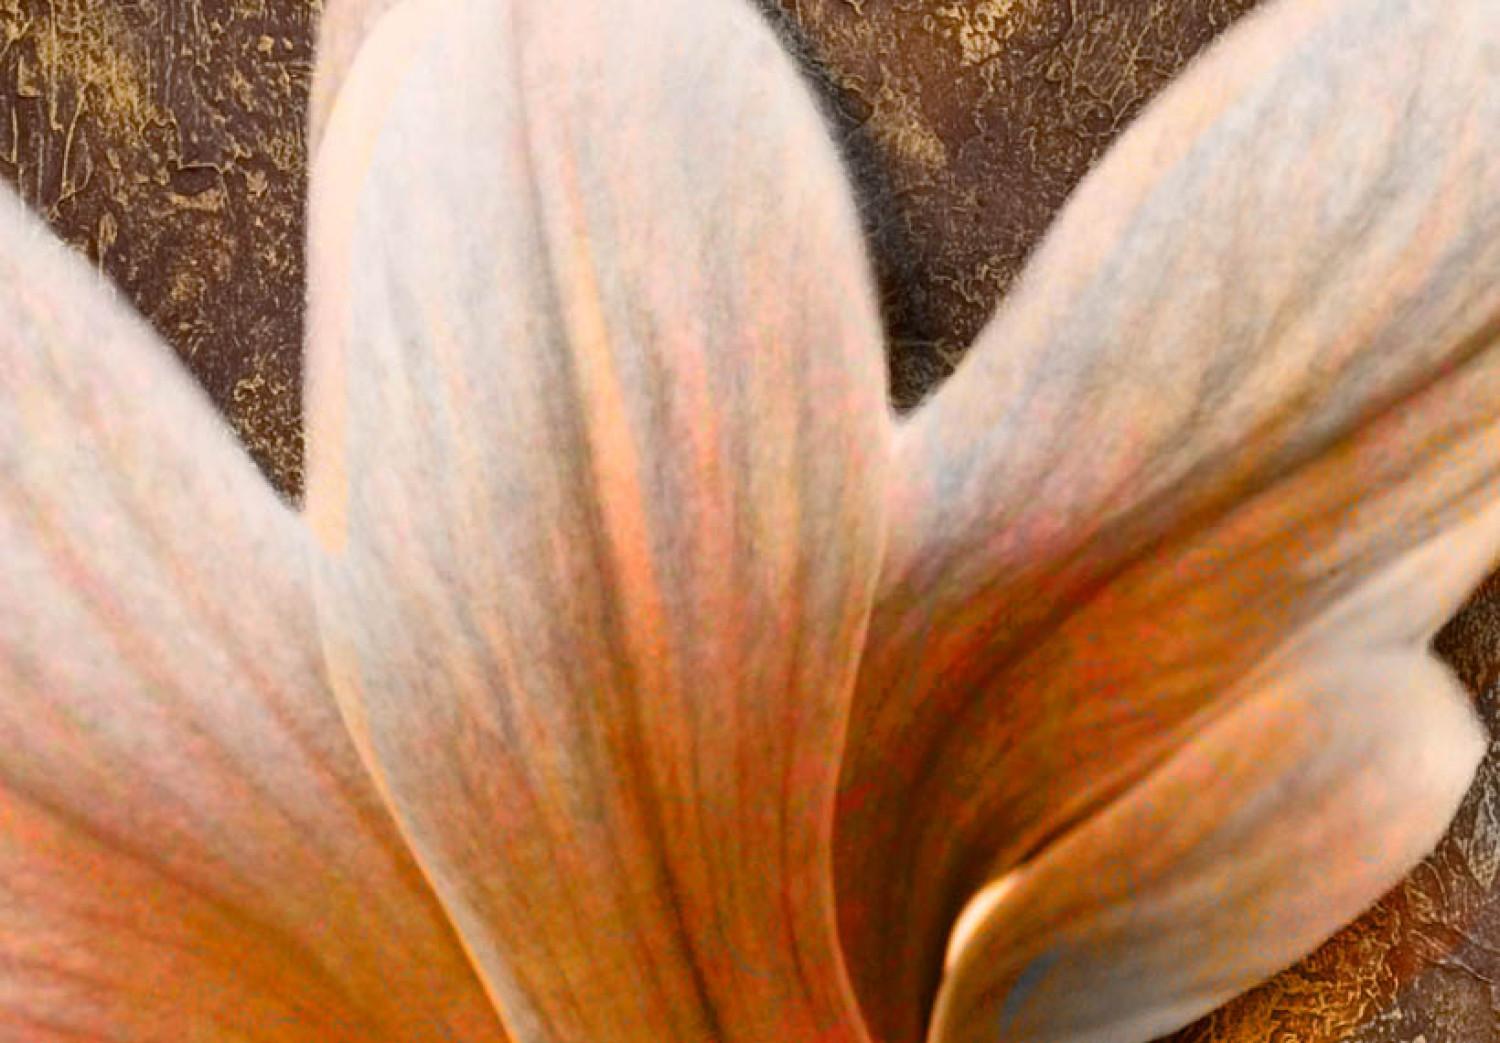 Cuadro moderno Naturaleza de magnolia (1 pieza) - flores brillantes en tonos marrones